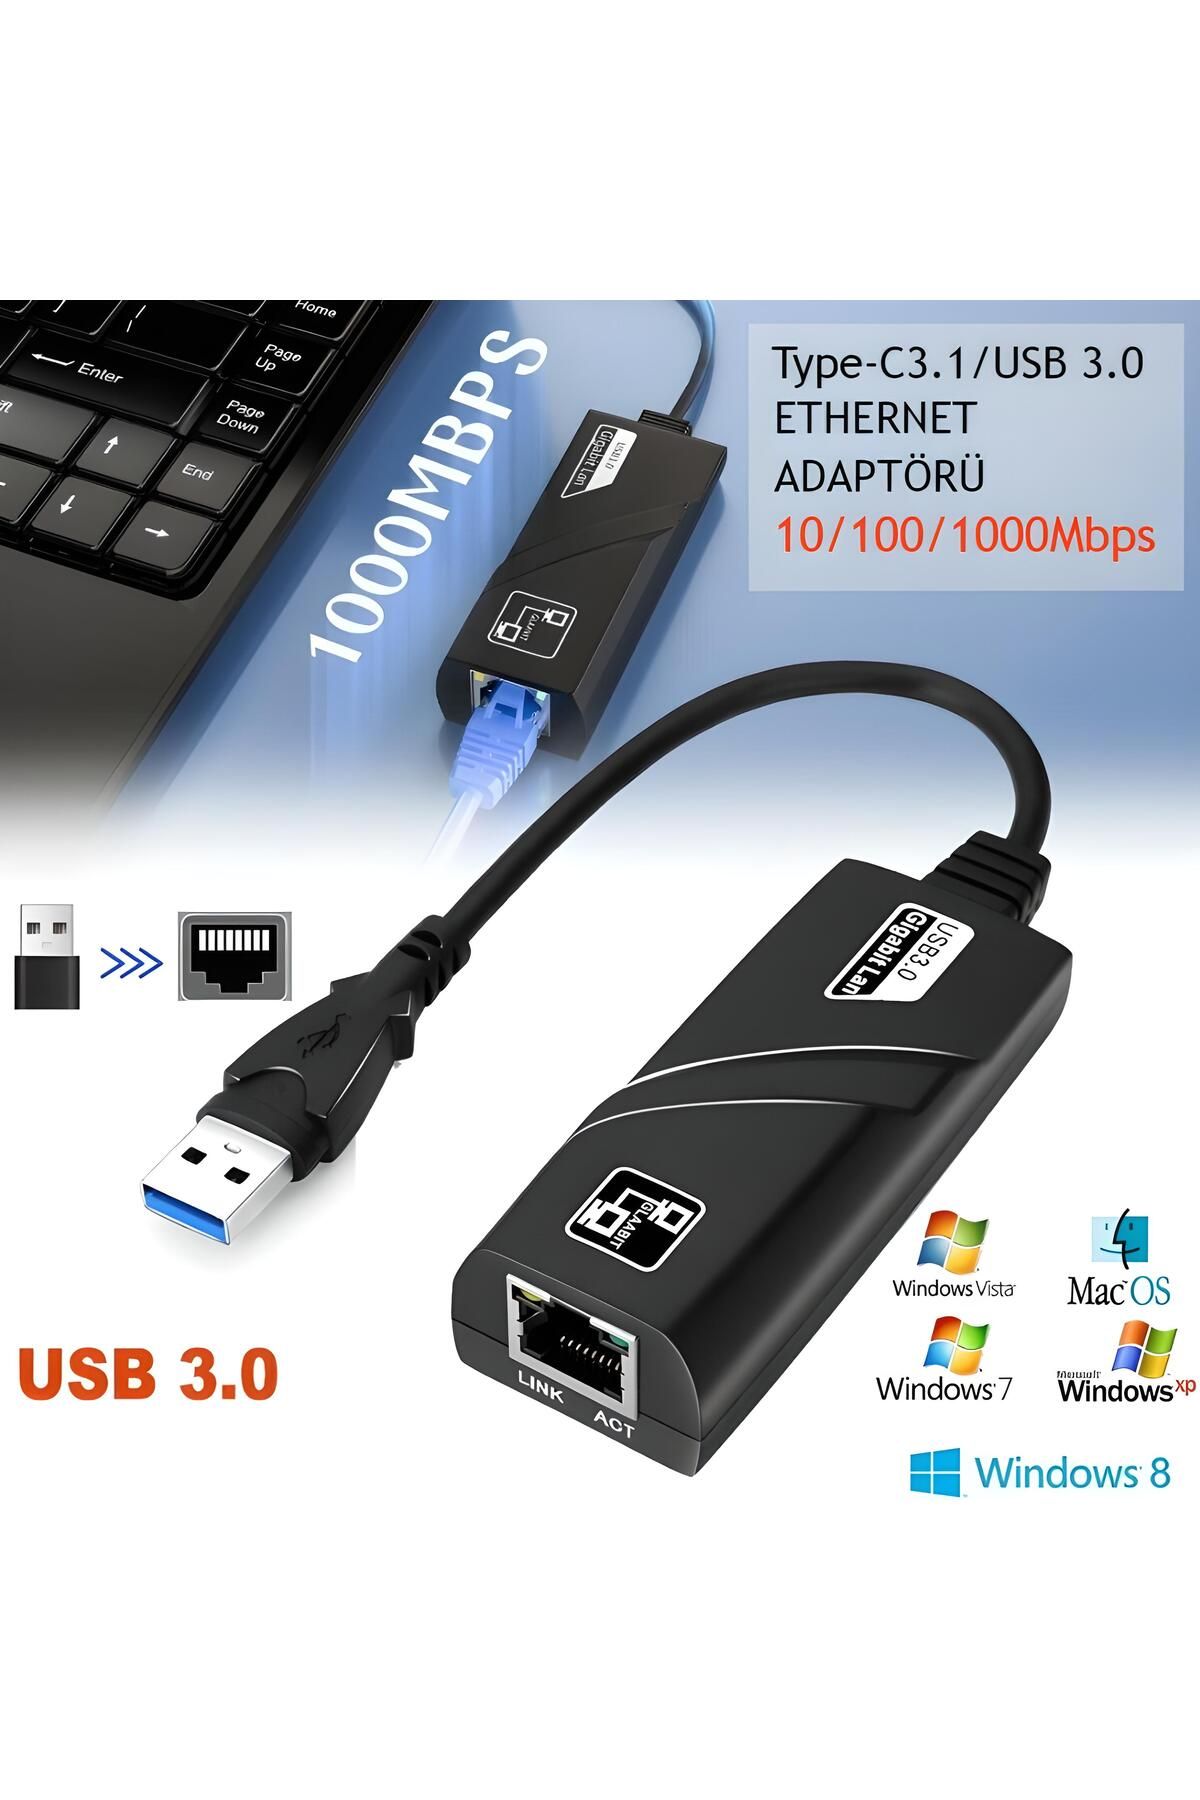 nextbuy Type-C3.1 Usb 3.0 Gigabit Ethernet Adaptörü Kablolu USB Dönüştürücü 1000 Mbps Laptop PC Çevirici